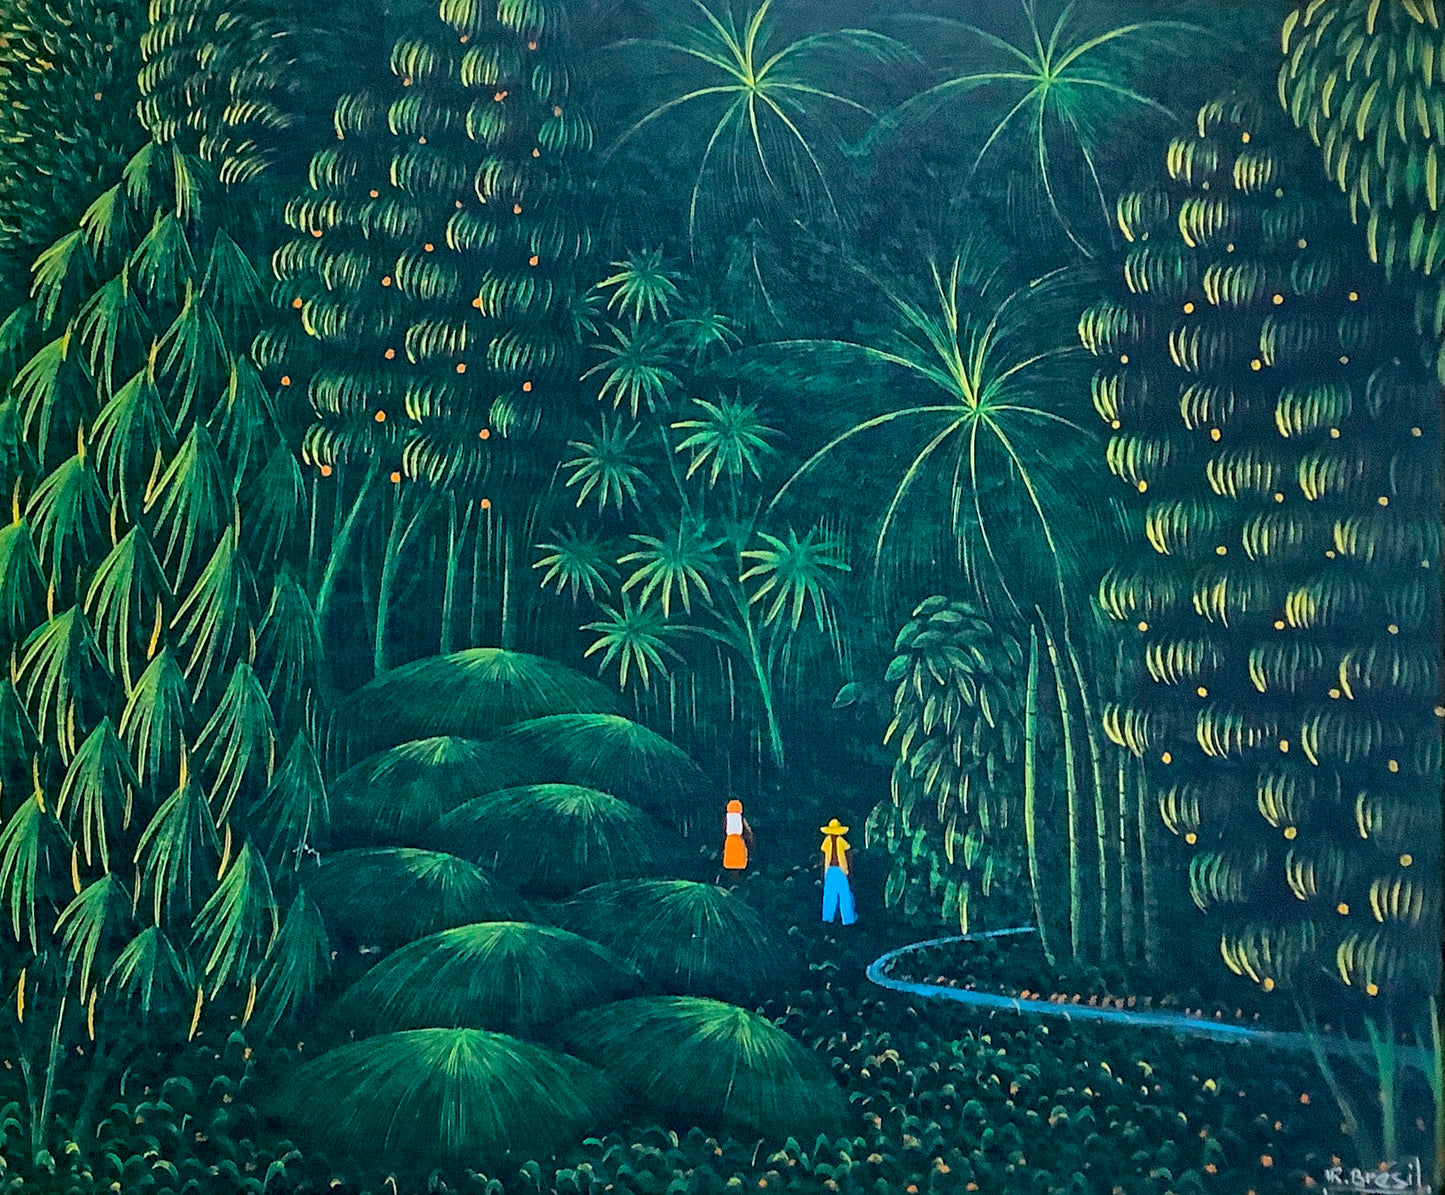 Henri-Robert Bresil (Haïtien, 1952-1999) 20"x24" Forêt verte avec des gens et une rivière 1981 Peinture à l'huile sur toile encadrée #1AM